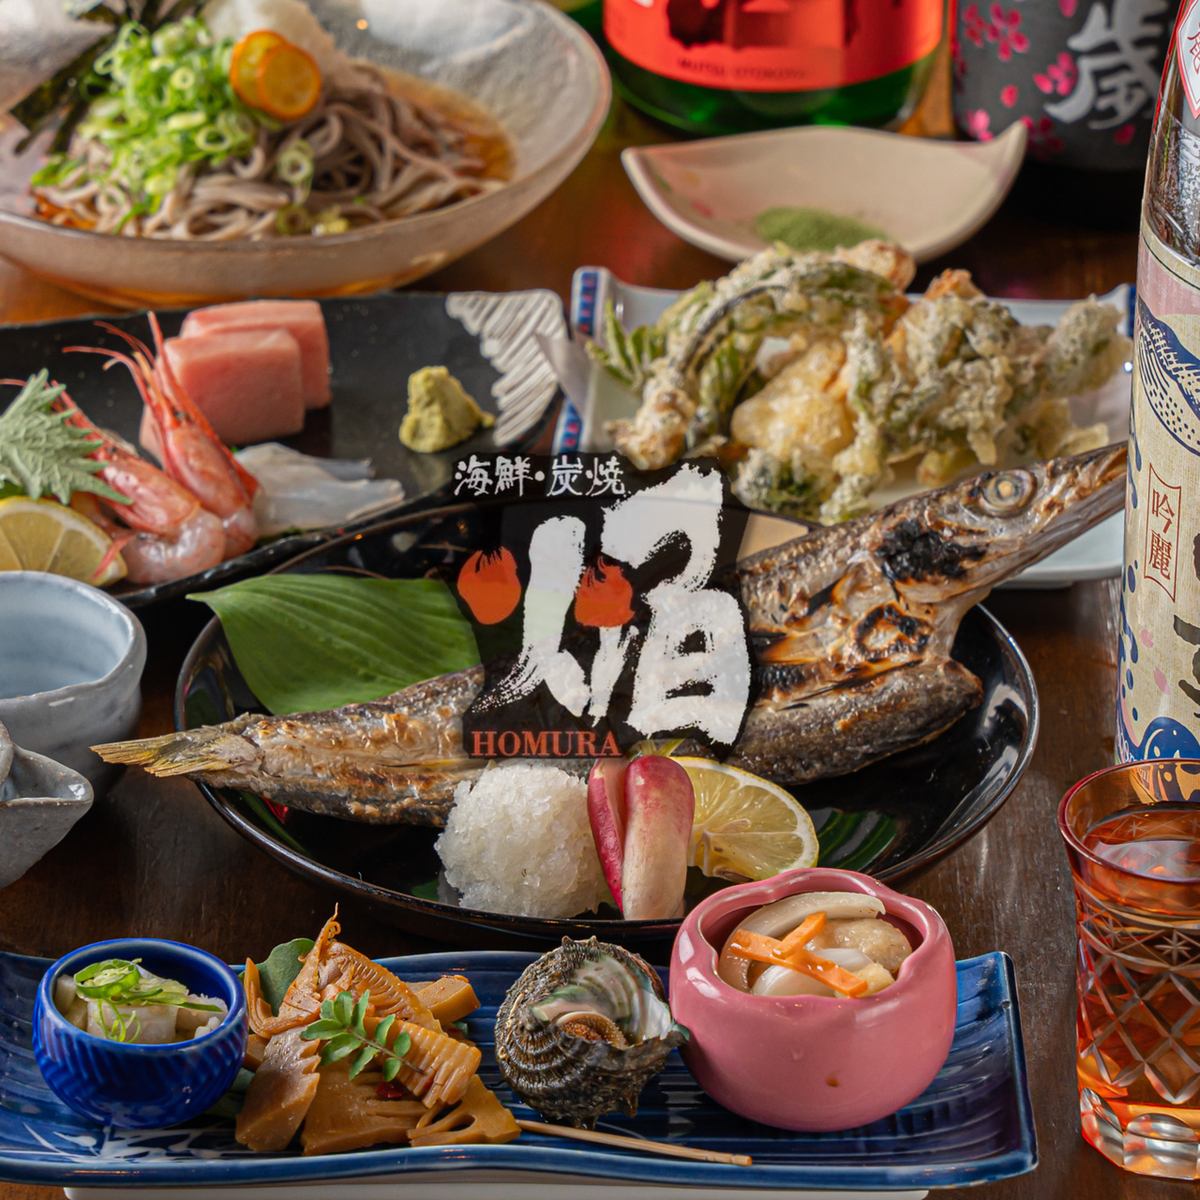 차분한 일본식 공간에서 만끽하는 해물 숯구이를 만끽 ◎ 은신처 술집으로도 추천 ◎